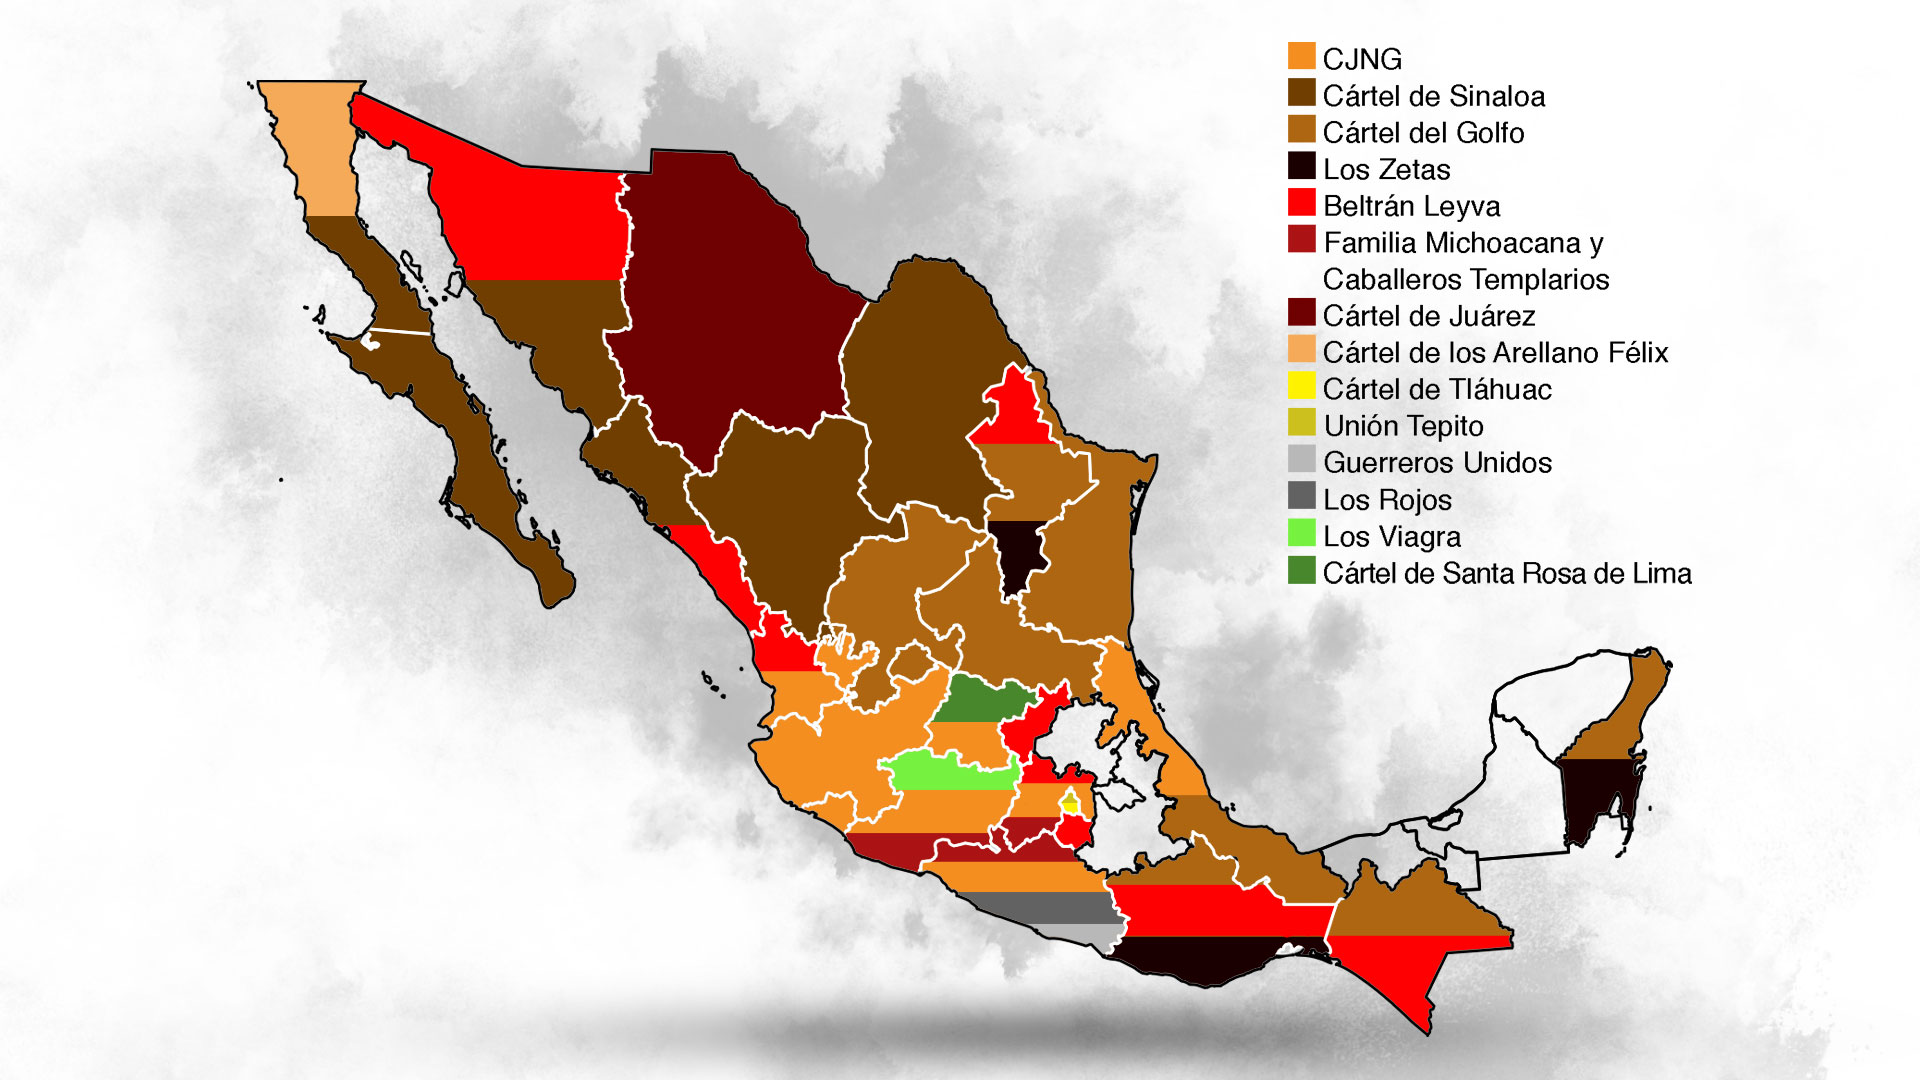 Sinaloa Cartel And Los Zetas